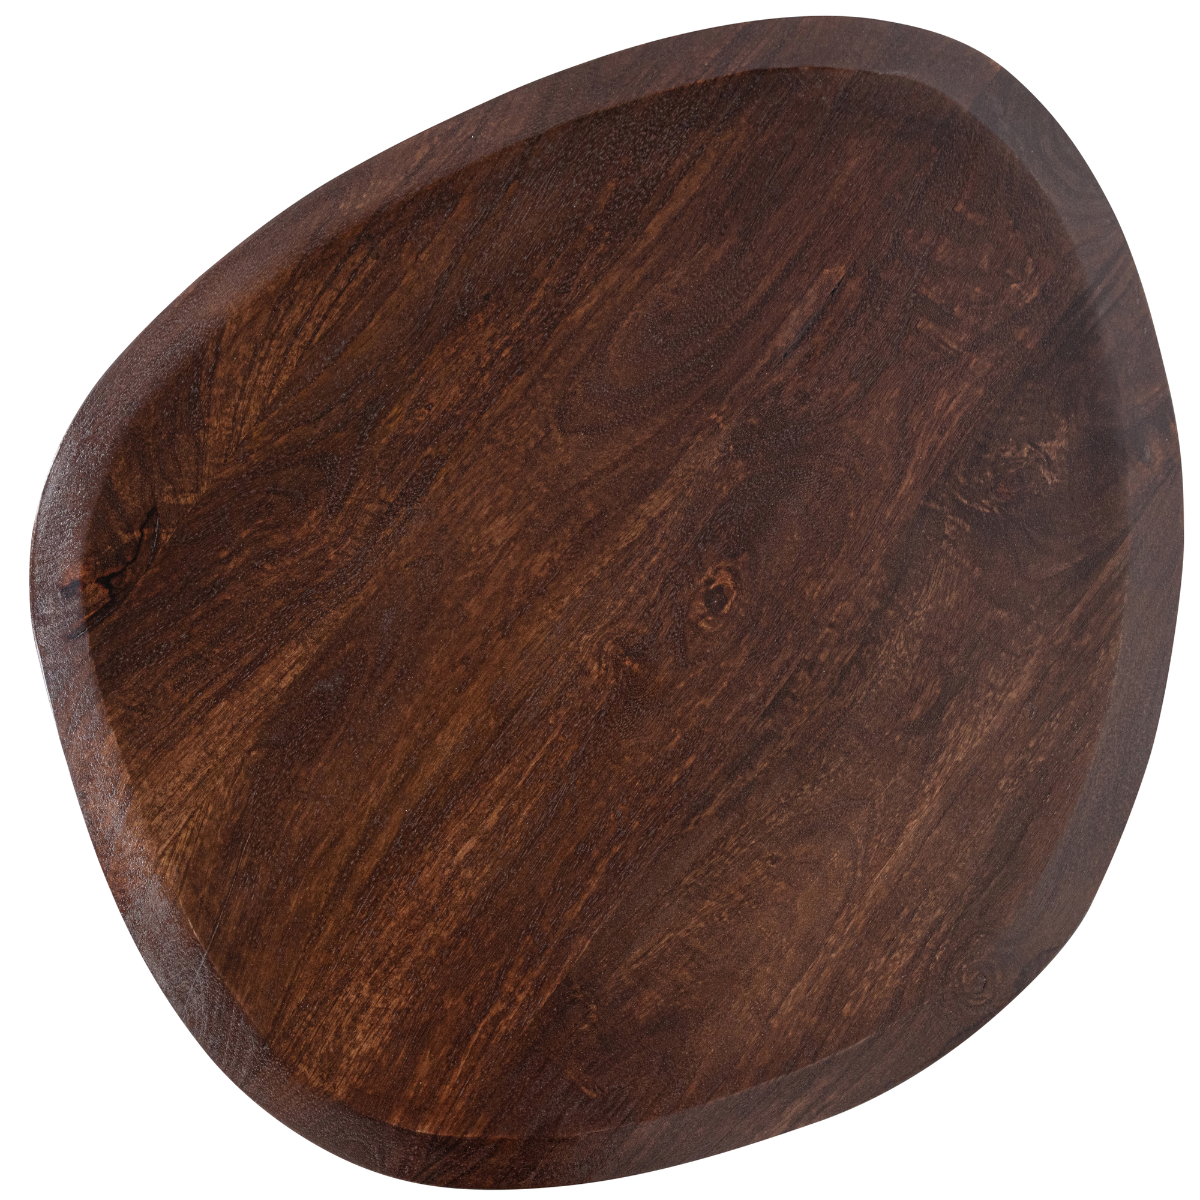 Posture Walnut Wood Side Table